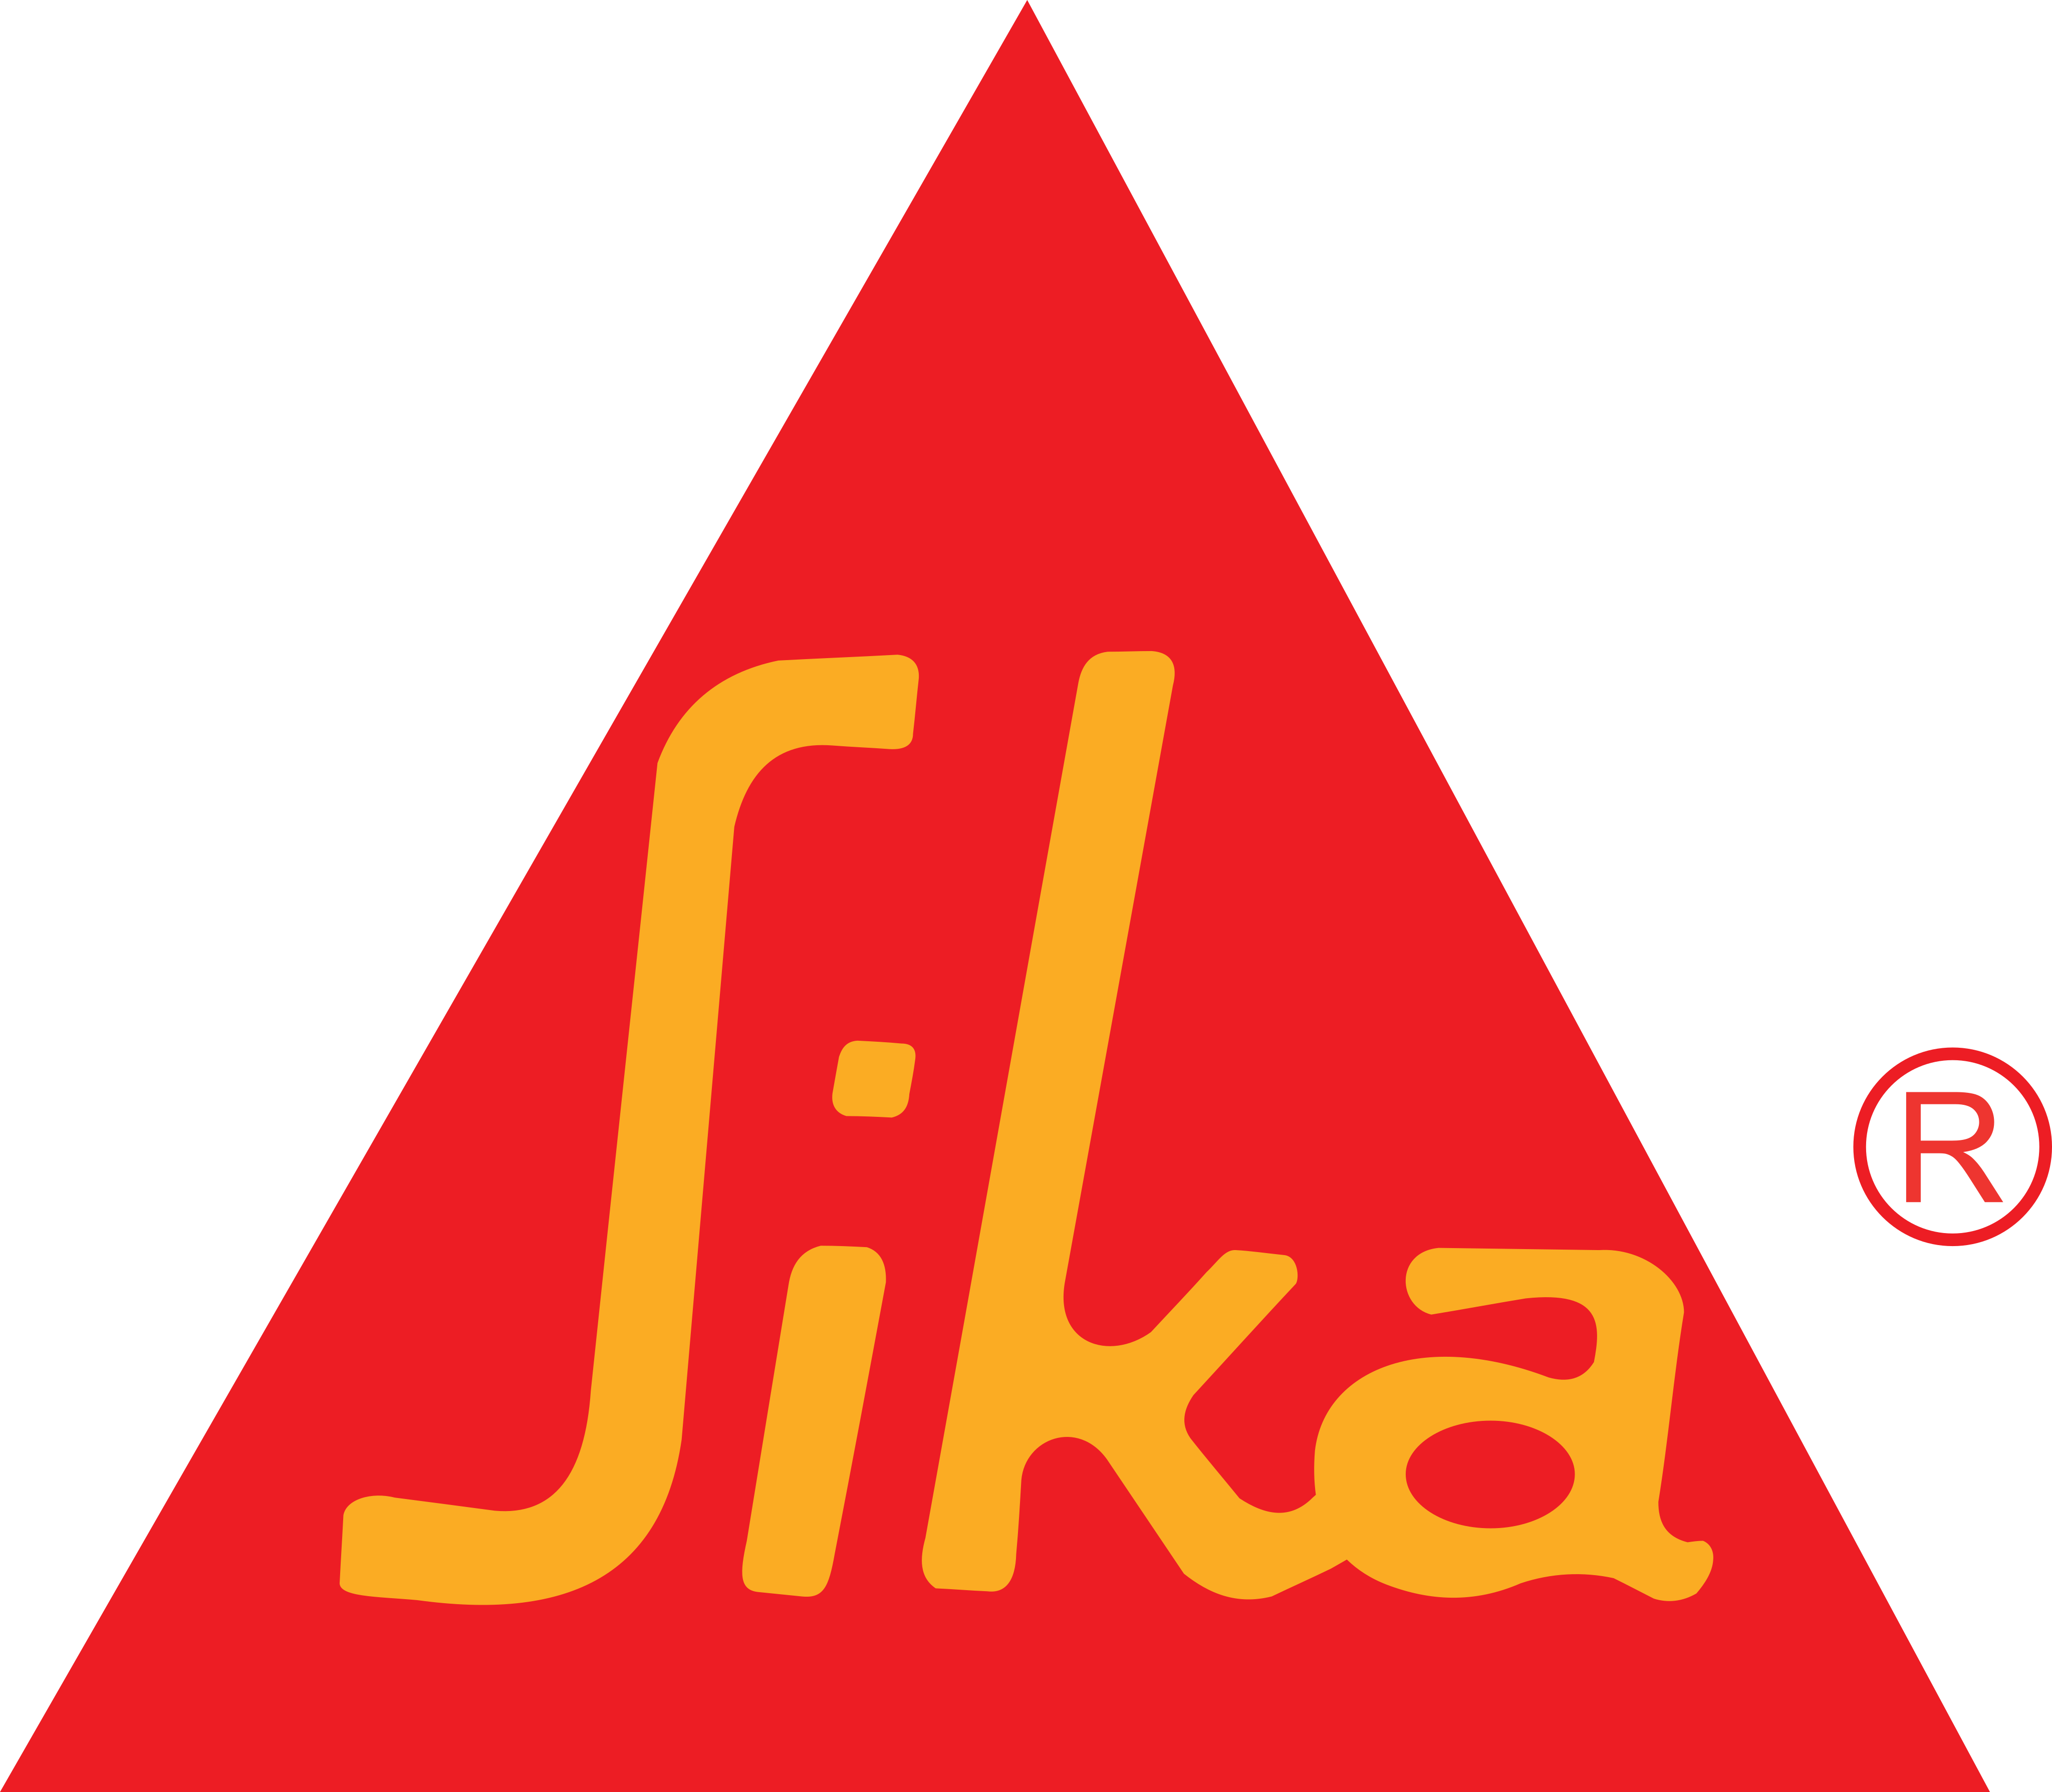 sika logo - Sika Logo